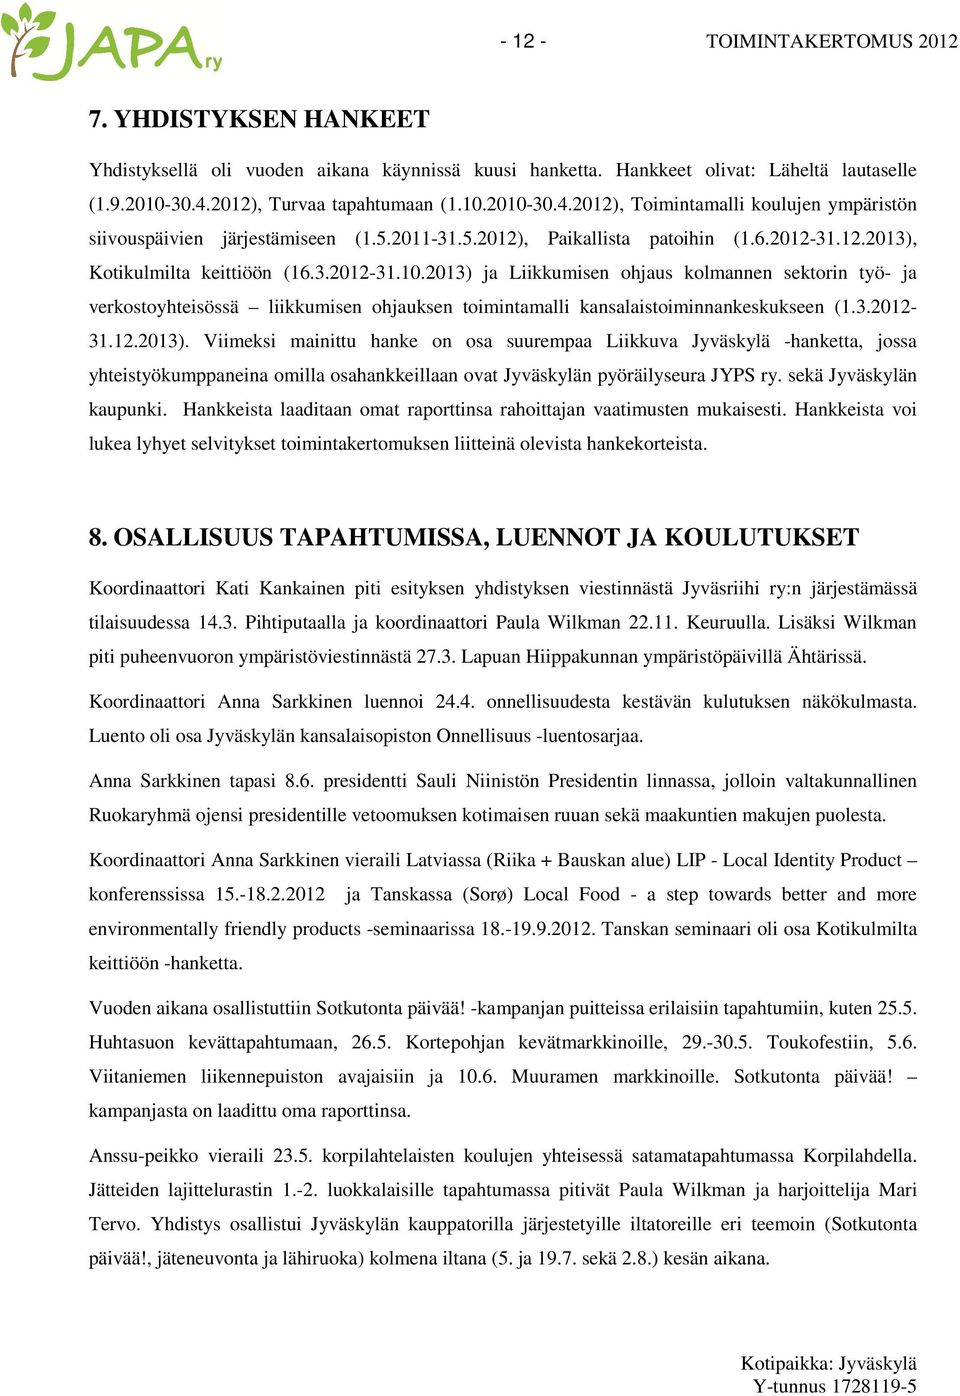 3.2012-31.10.2013) ja Liikkumisen ohjaus kolmannen sektorin työ- ja verkostoyhteisössä liikkumisen ohjauksen toimintamalli kansalaistoiminnankeskukseen (1.3.2012-31.12.2013). Viimeksi mainittu hanke on osa suurempaa Liikkuva Jyväskylä -hanketta, jossa yhteistyökumppaneina omilla osahankkeillaan ovat Jyväskylän pyöräilyseura JYPS ry.